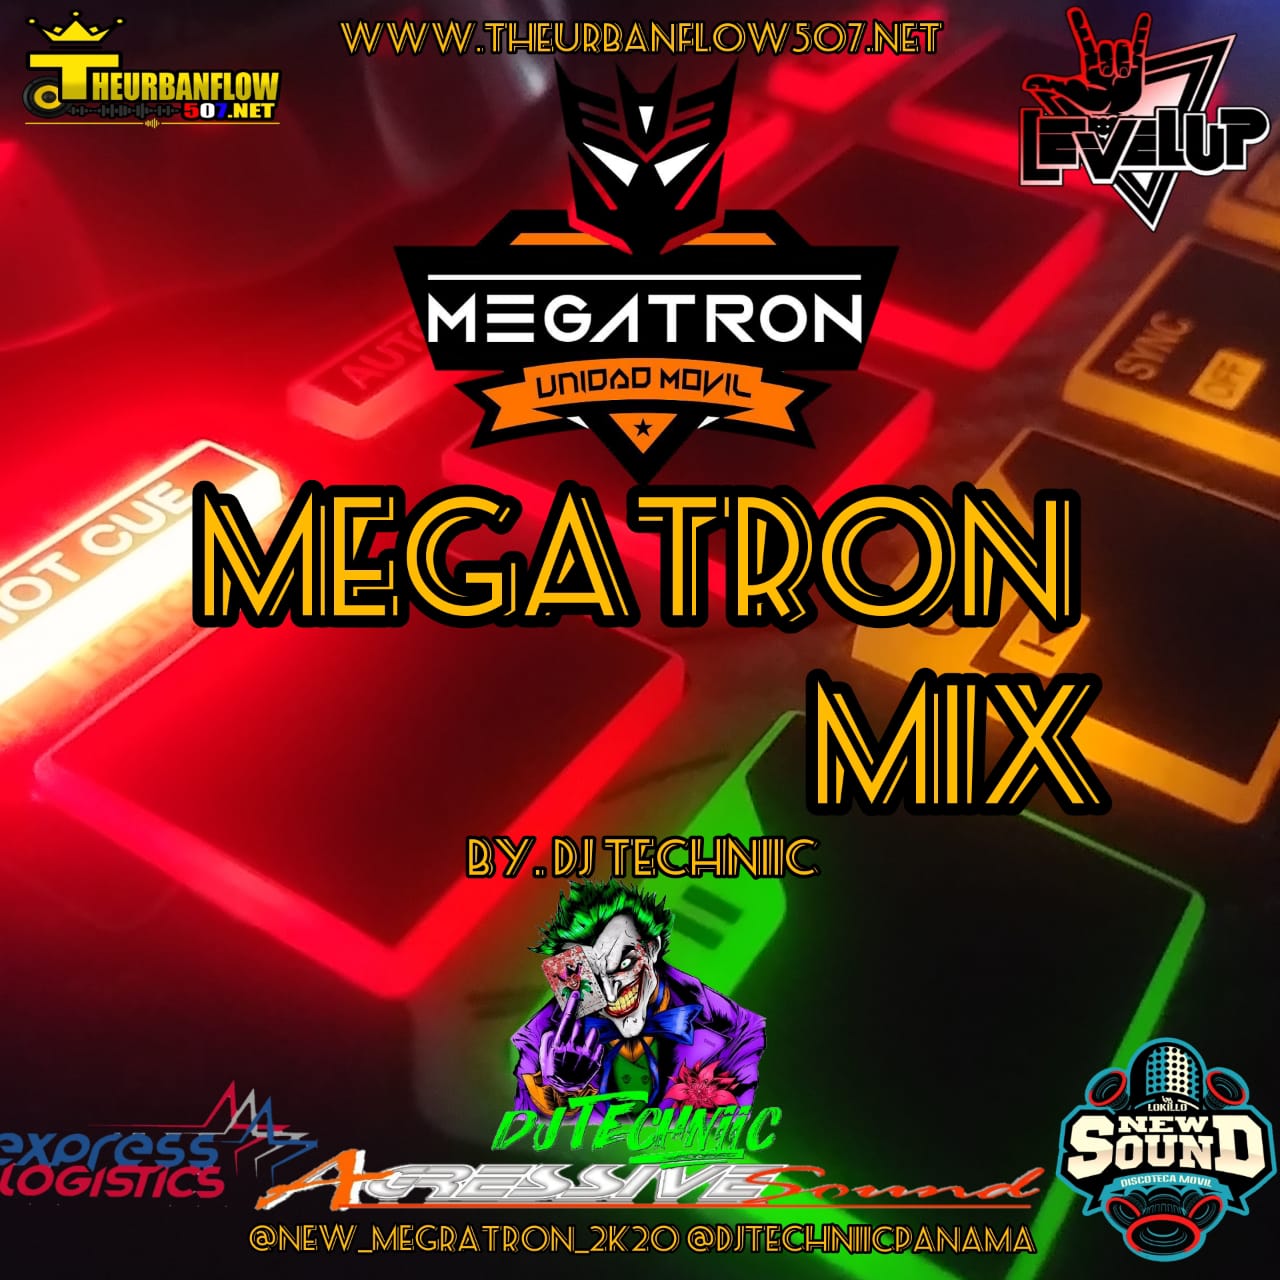 01 MEGATRON MIX - DJ TECHNIIC